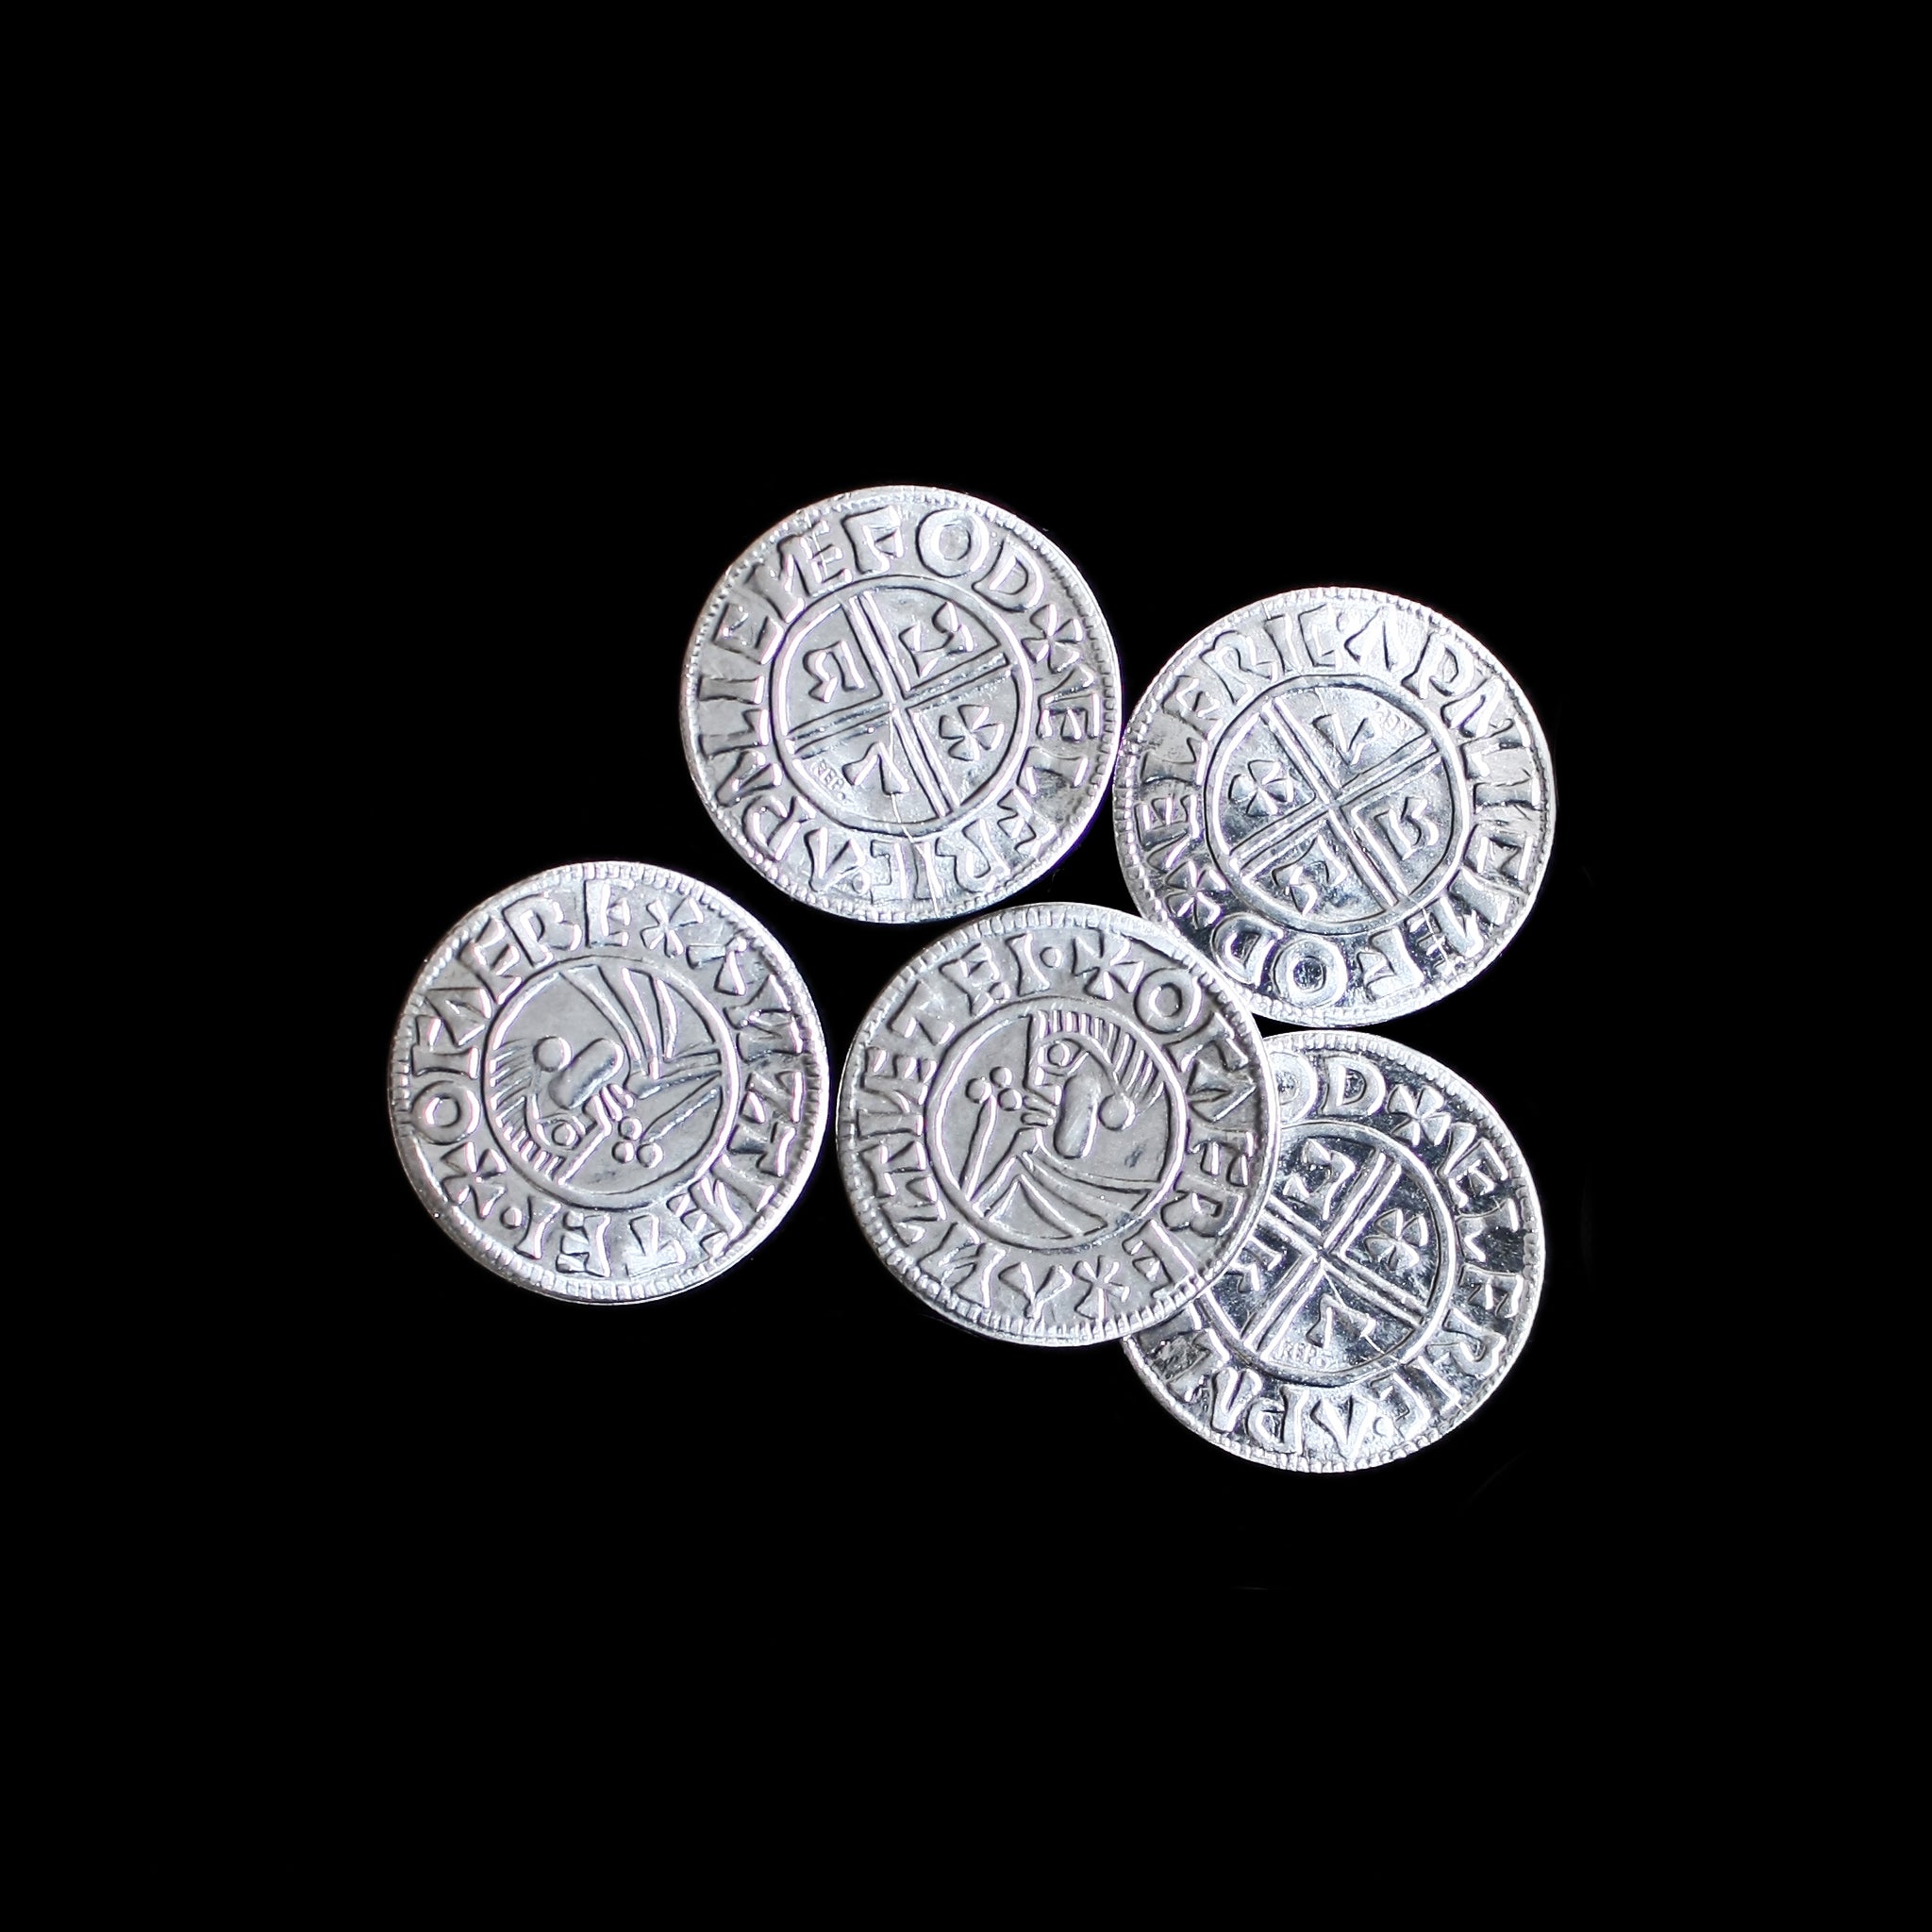 Aethelred-Replika sächsischer Münzen aus Winchester